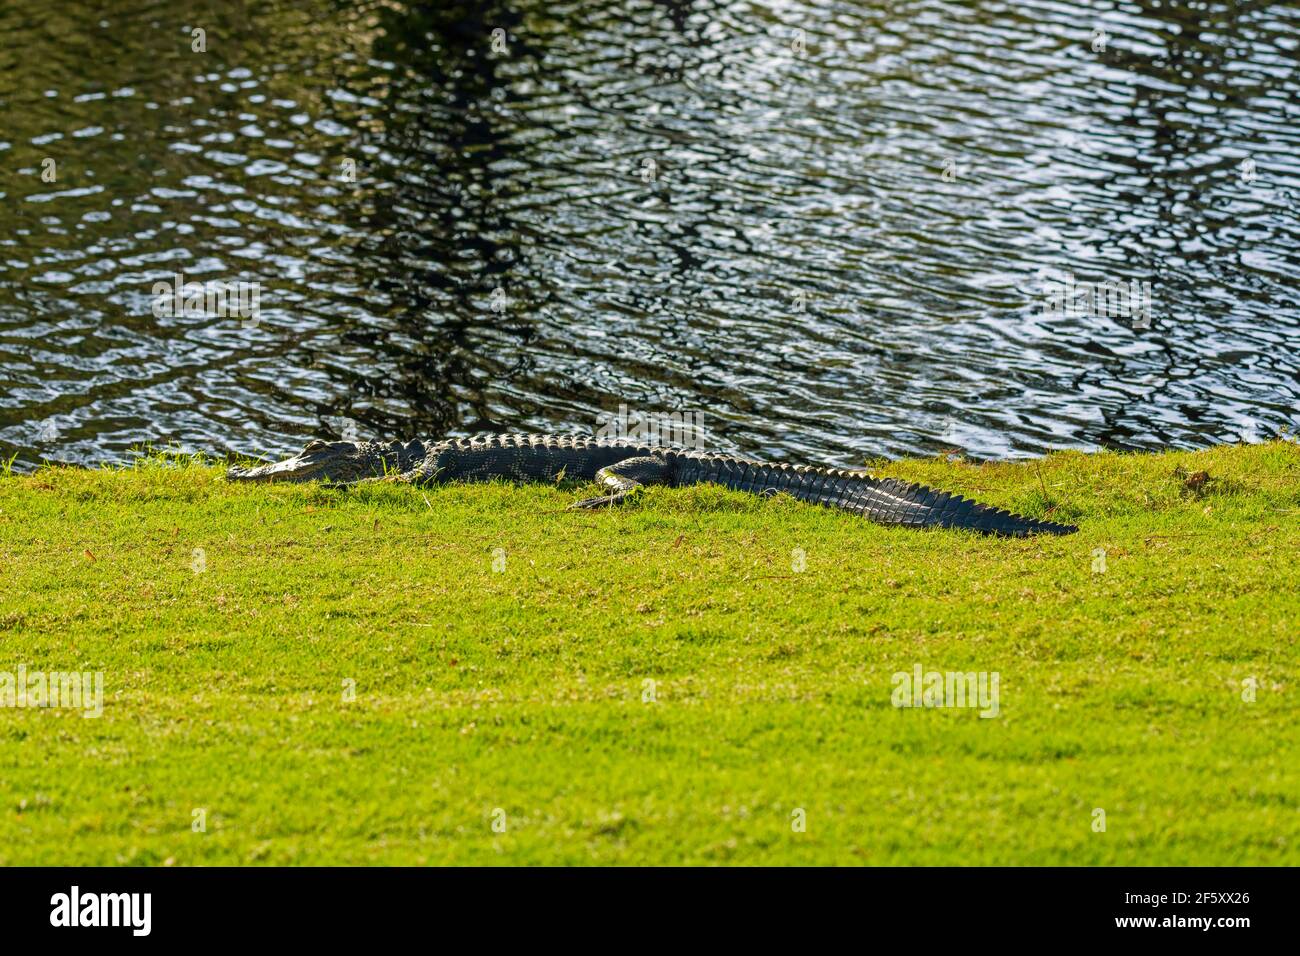 Ein amerikanischer Alligator, Alligator mississippiensis, der sich neben einem Teich sonnen Stockfoto